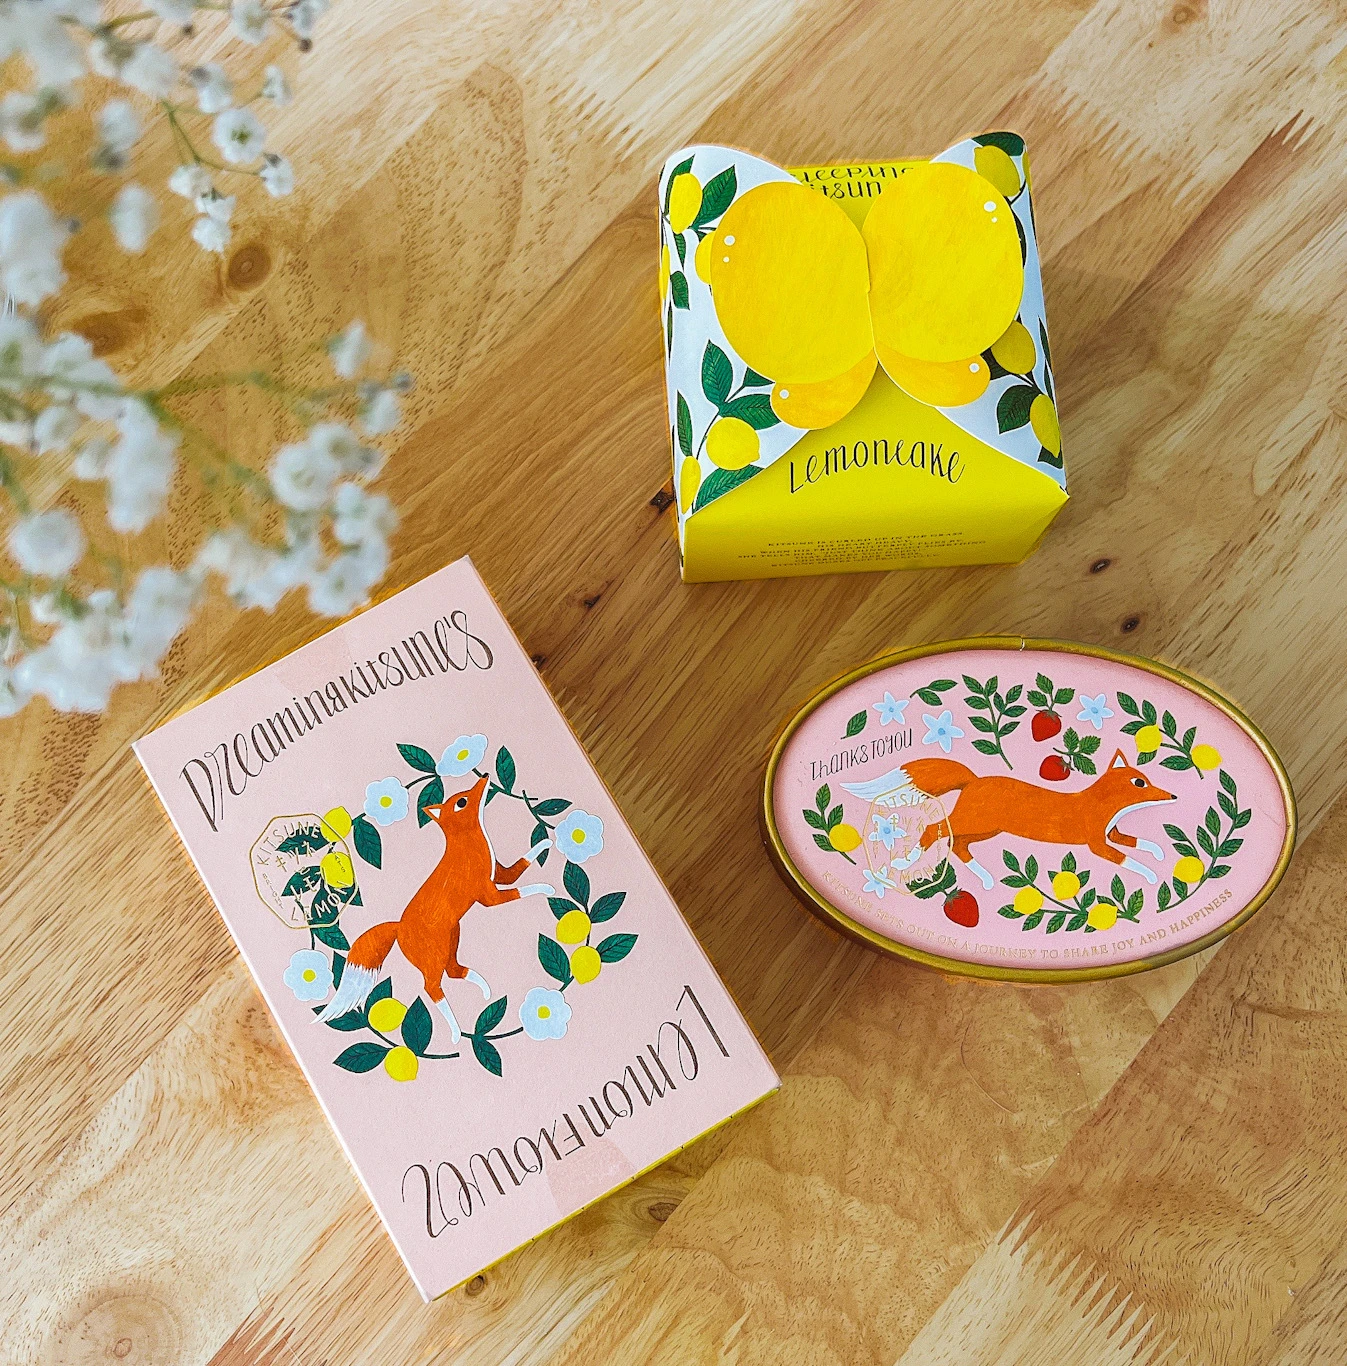 モロゾフの新ブランドのお菓子「キツネとレモン」の パッケージがかわいい